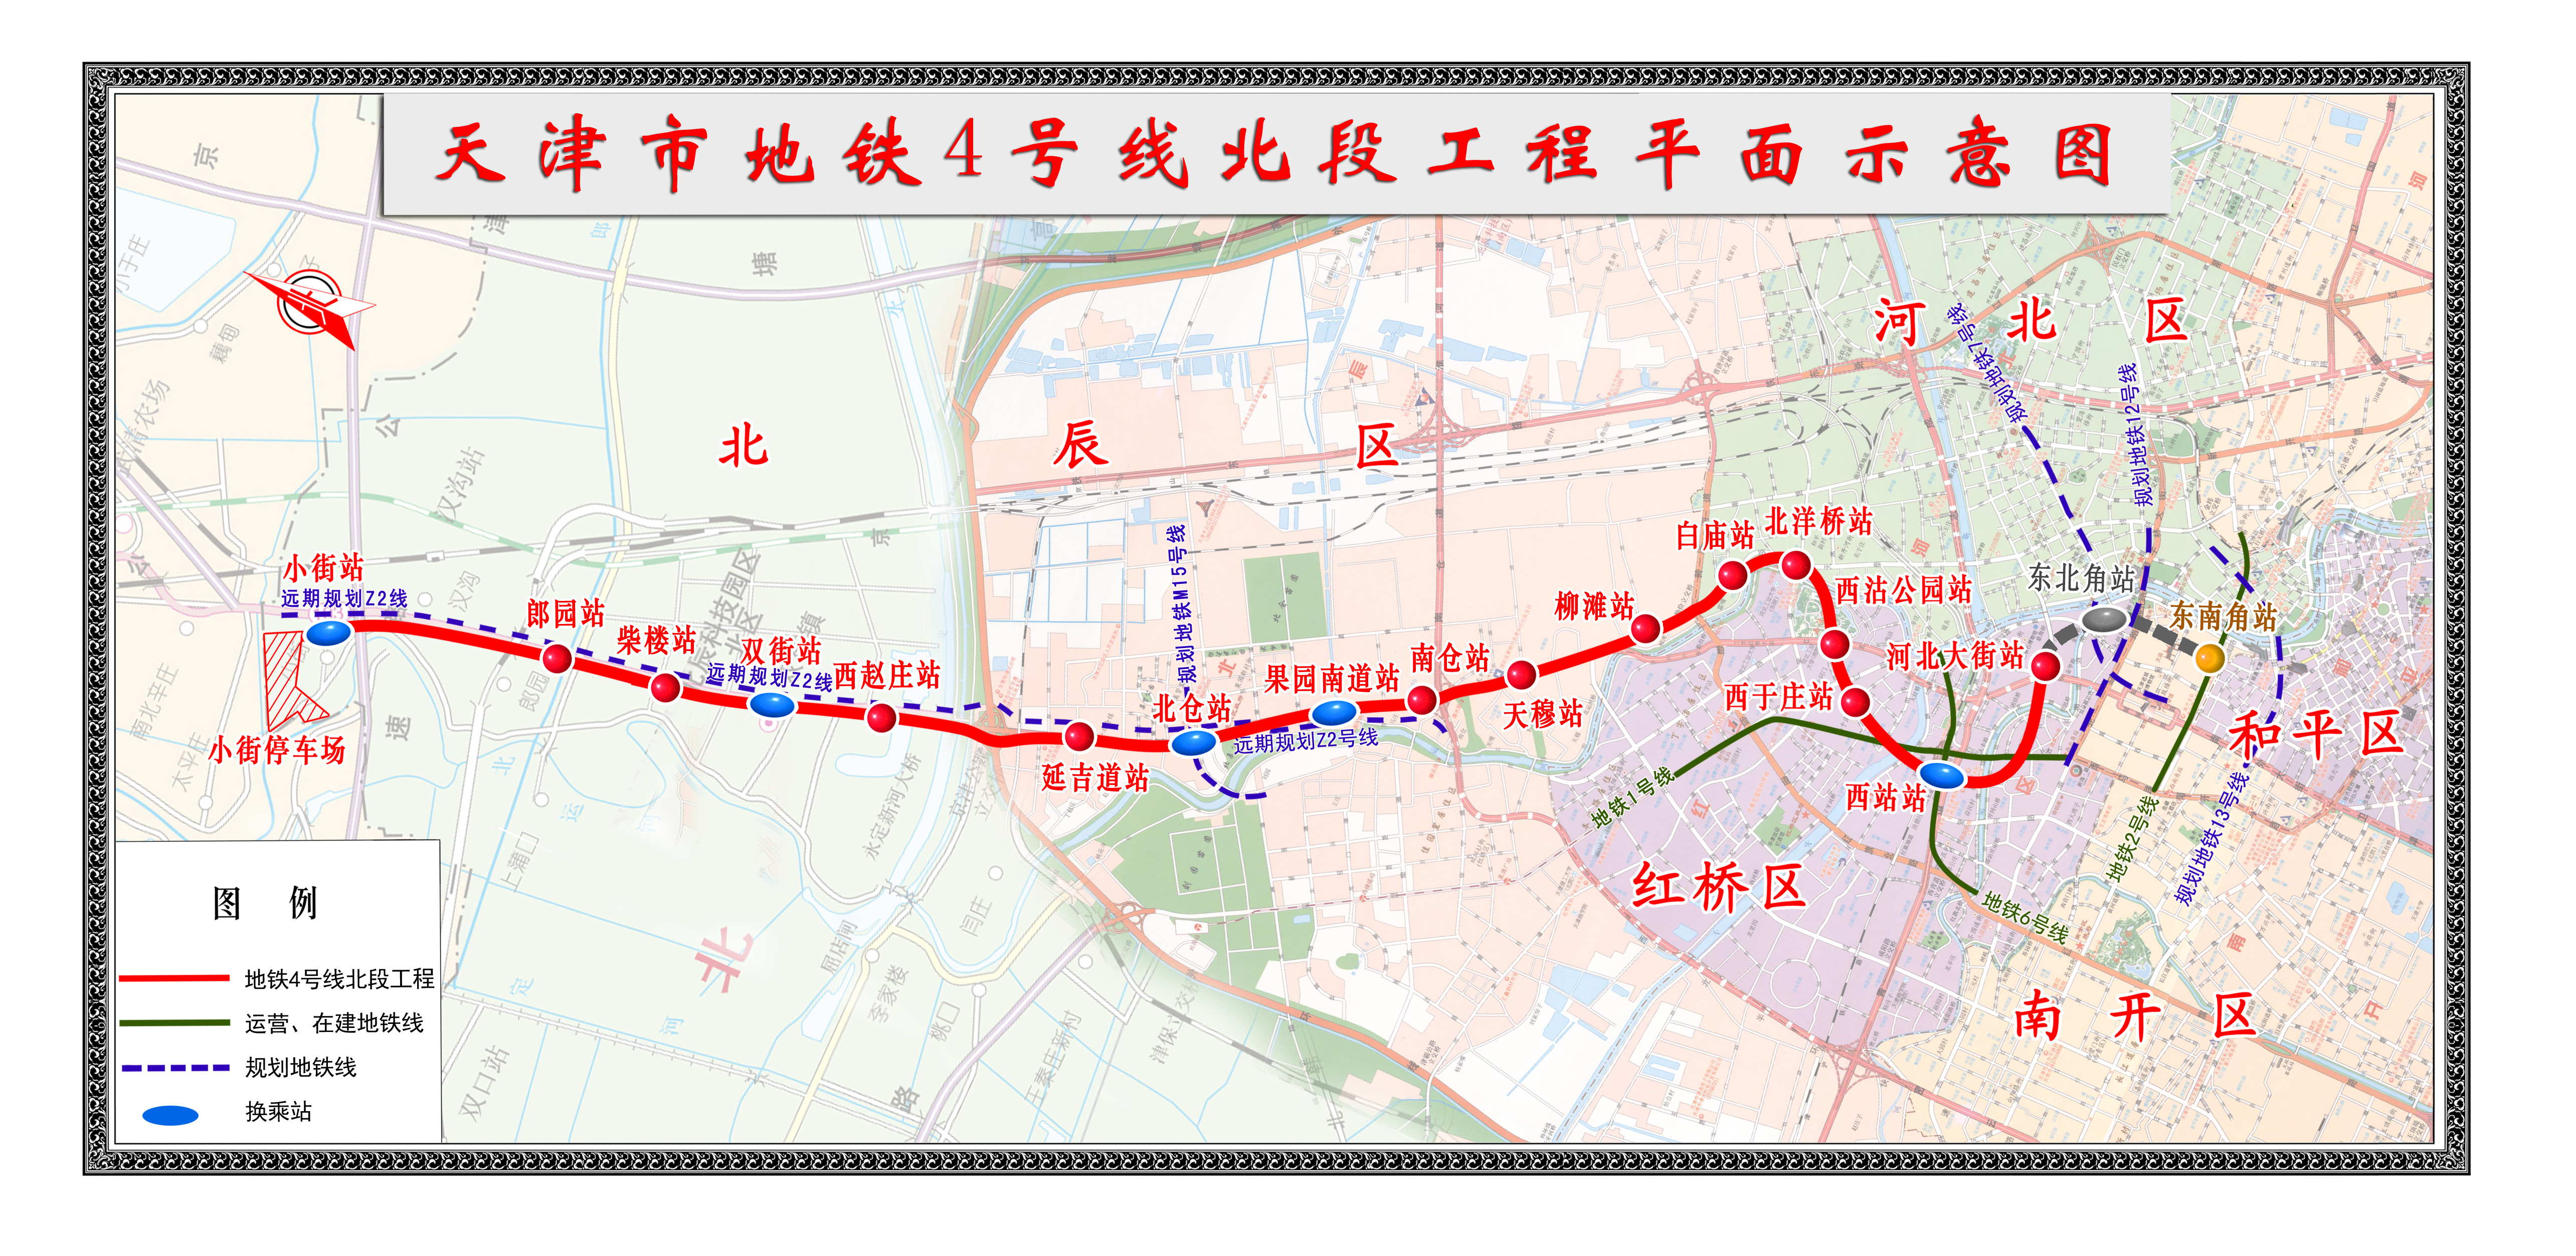 近日,天津地铁4号线北段工程通过"抗疫情,保增长,大干100天"劳动竞赛